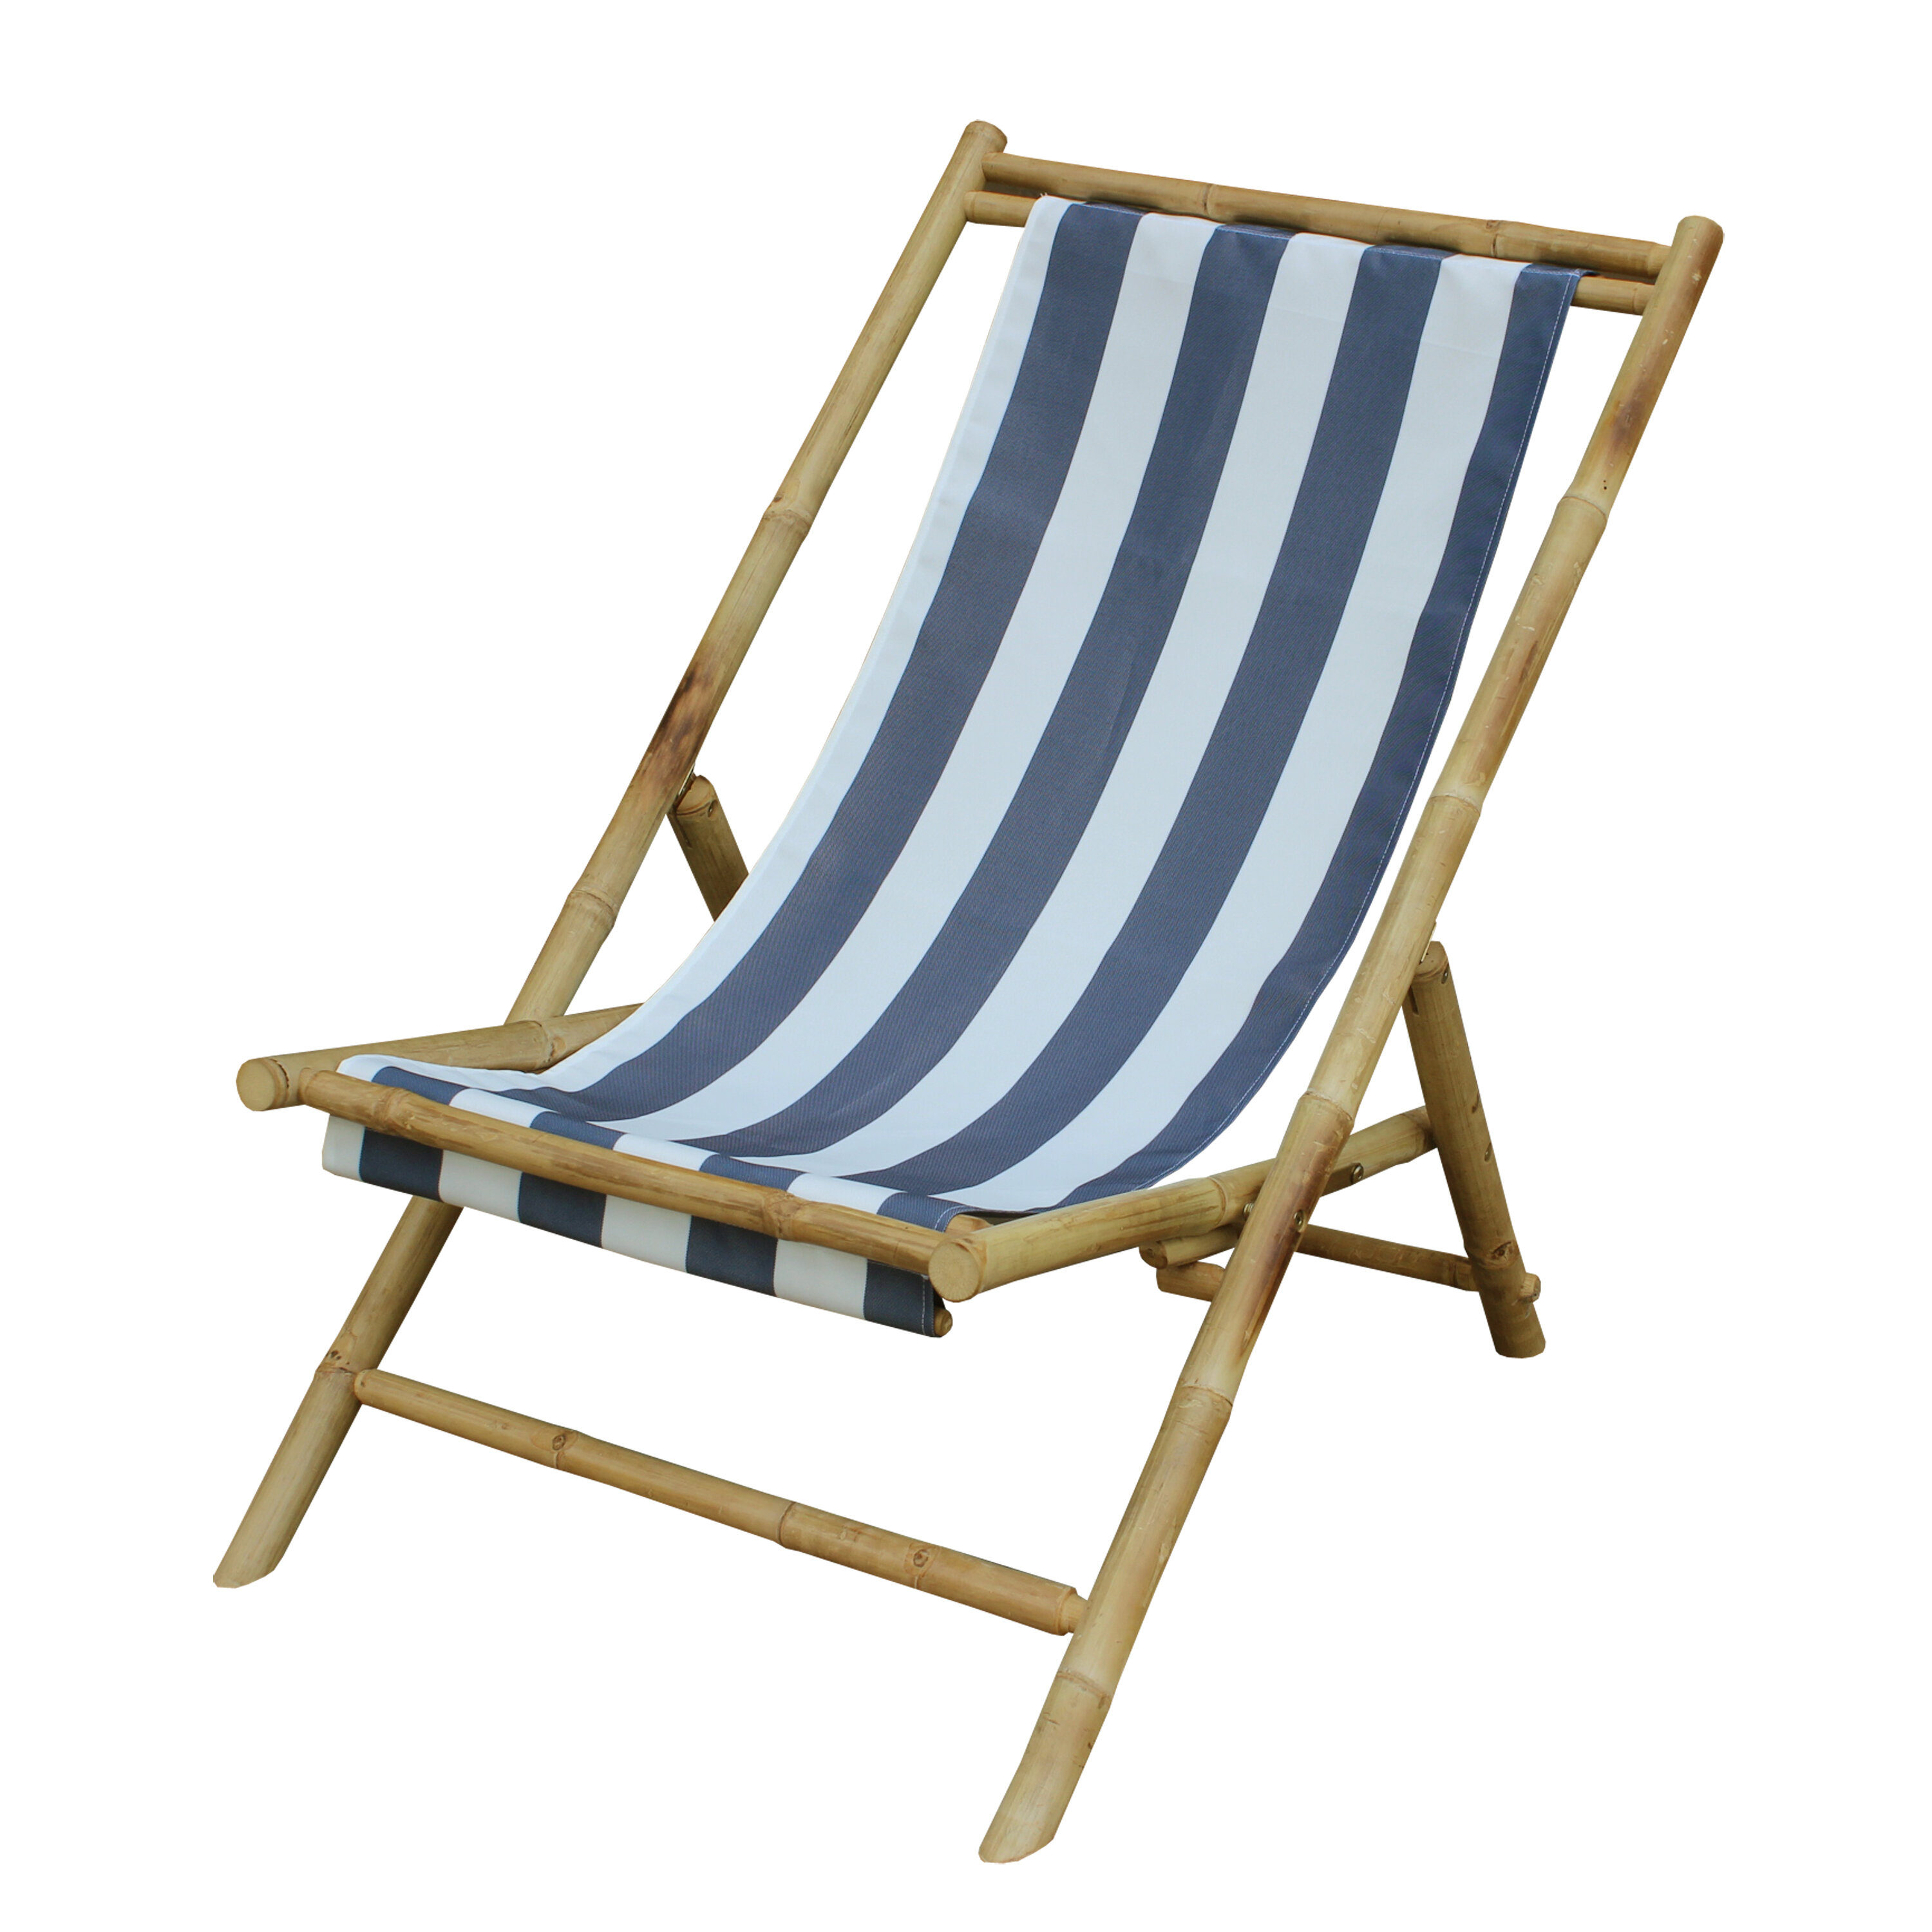 ZEW Sling Folding Beach Chair & Reviews Wayfair